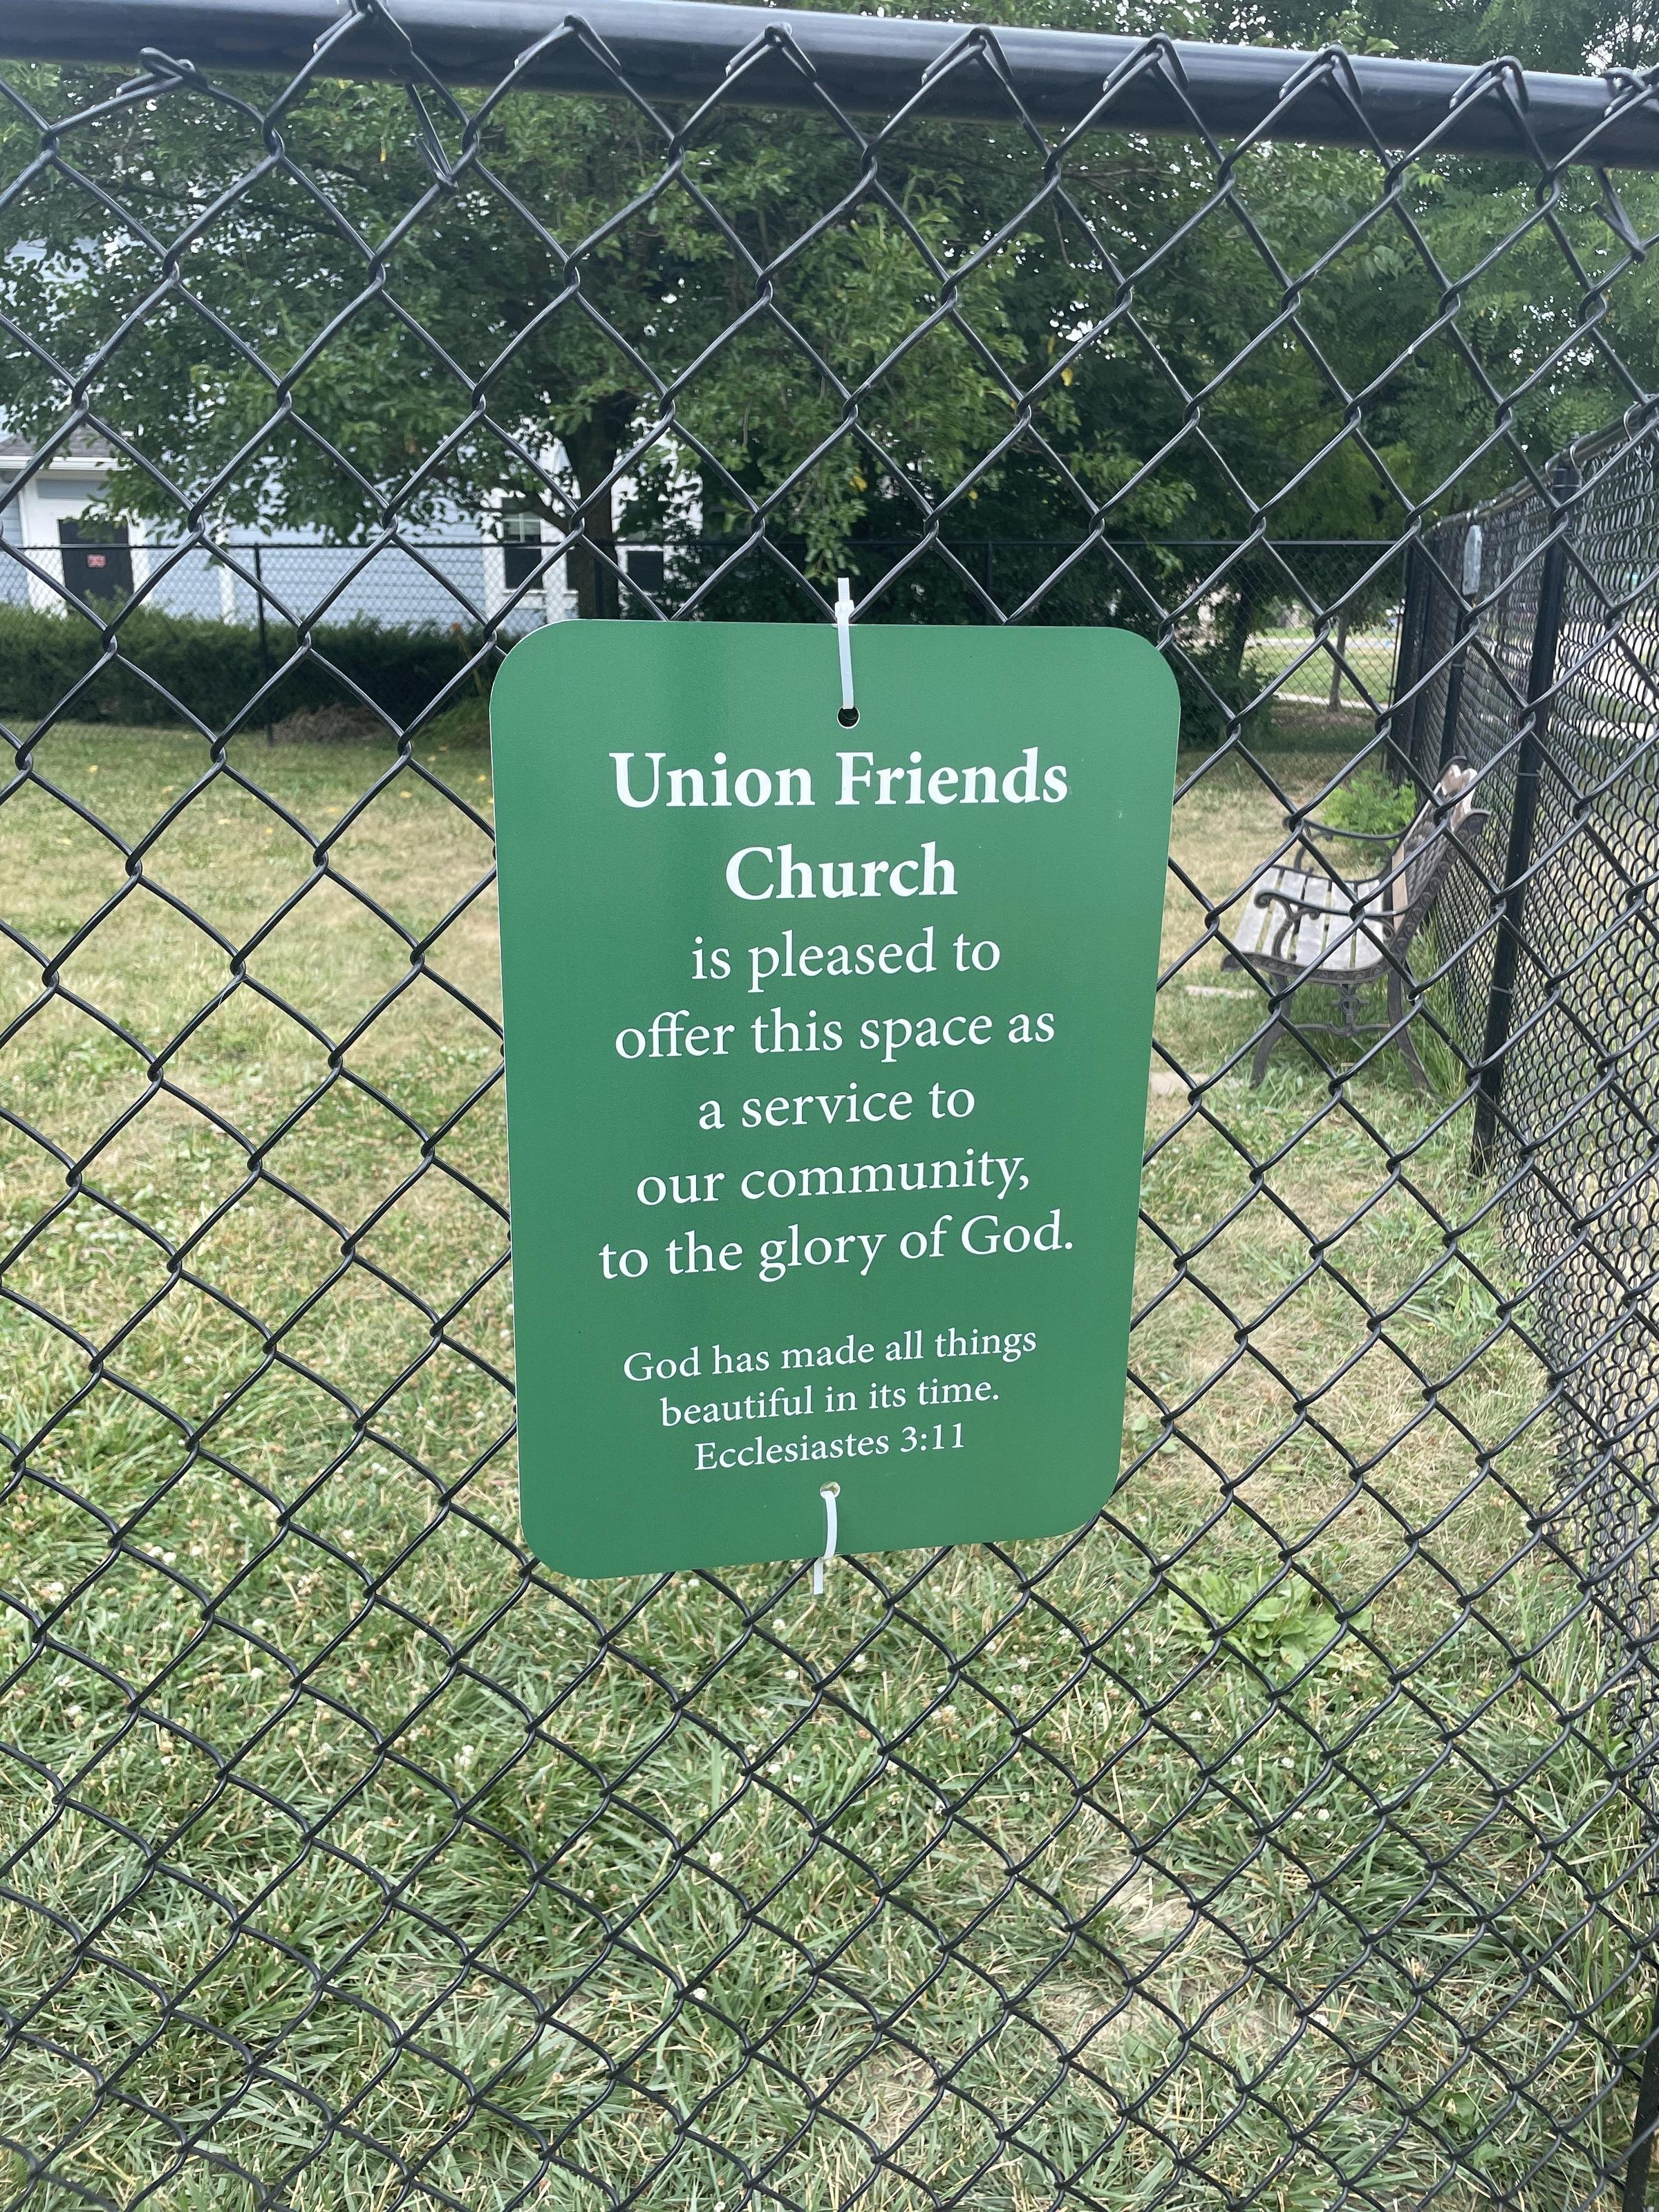 Pet Friendly Dog Park at Union Friends Church